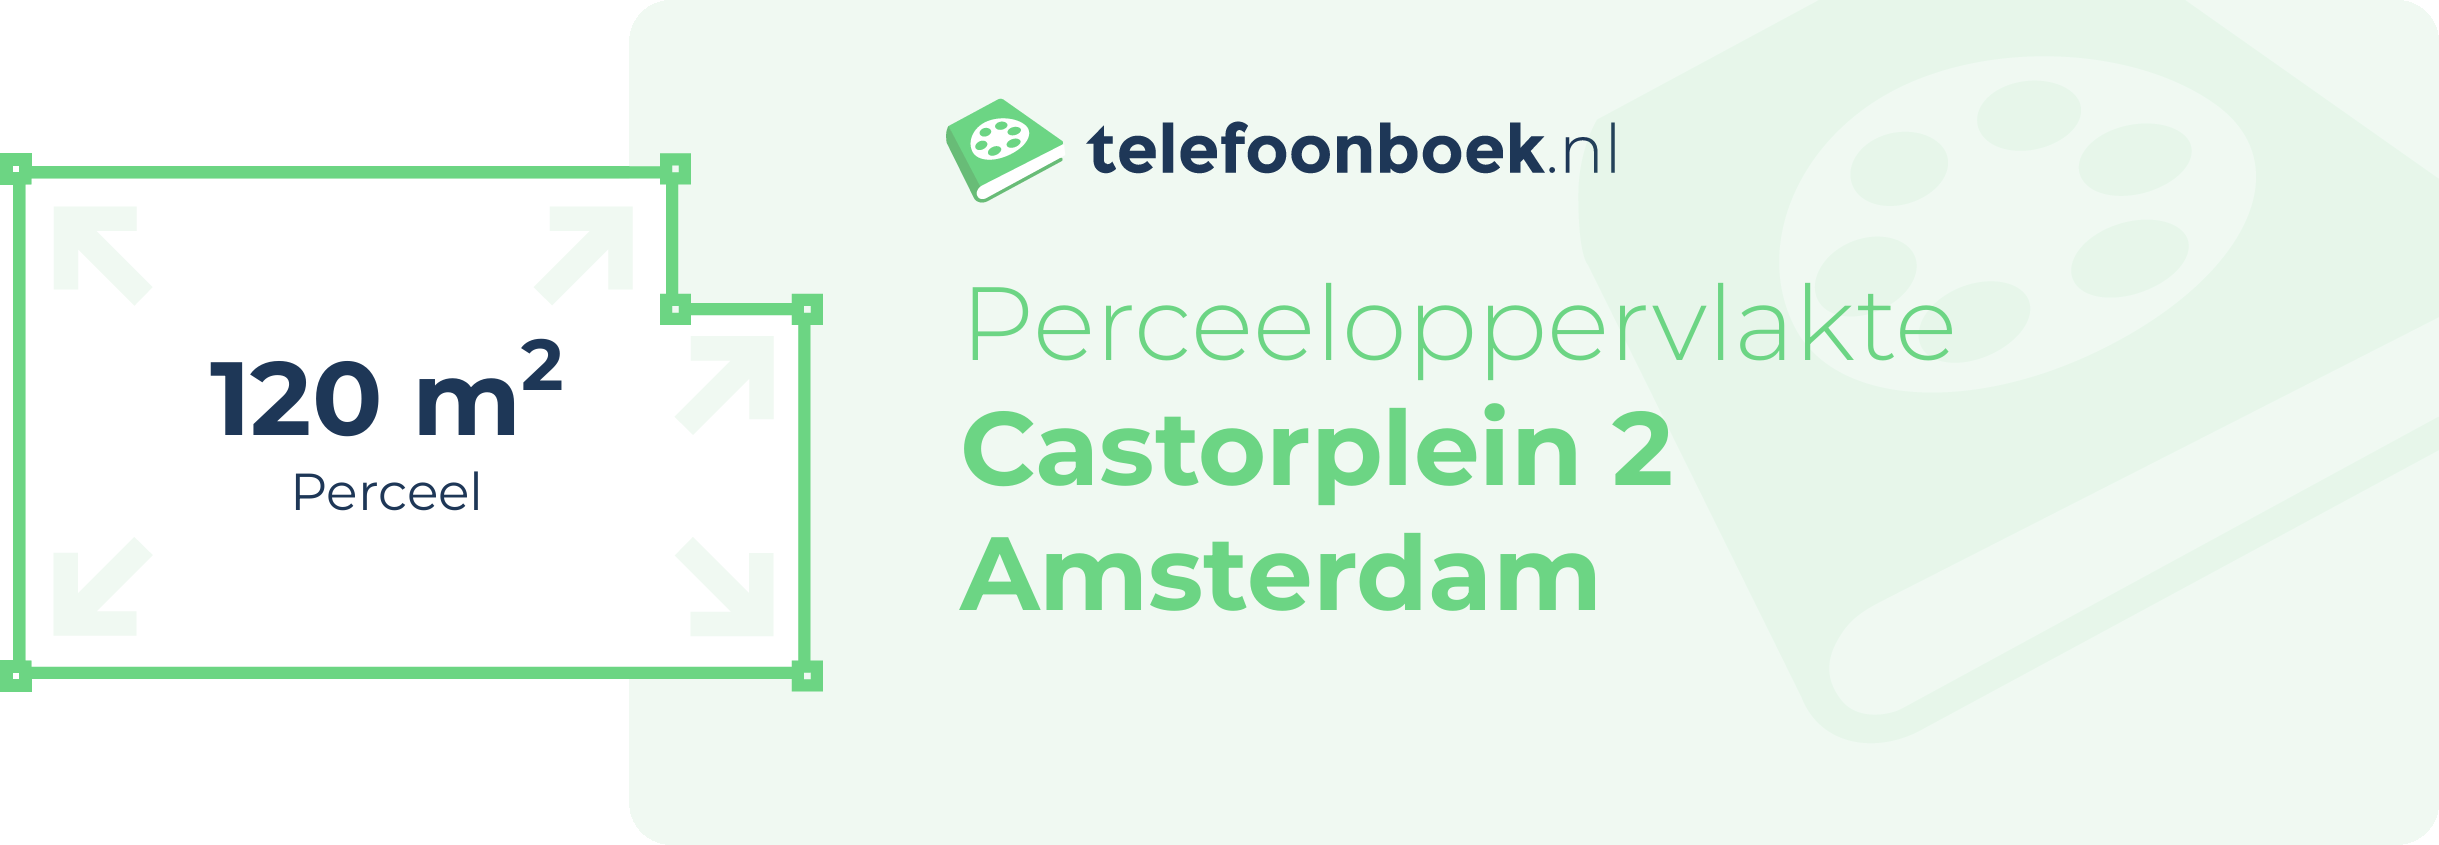 Perceeloppervlakte Castorplein 2 Amsterdam